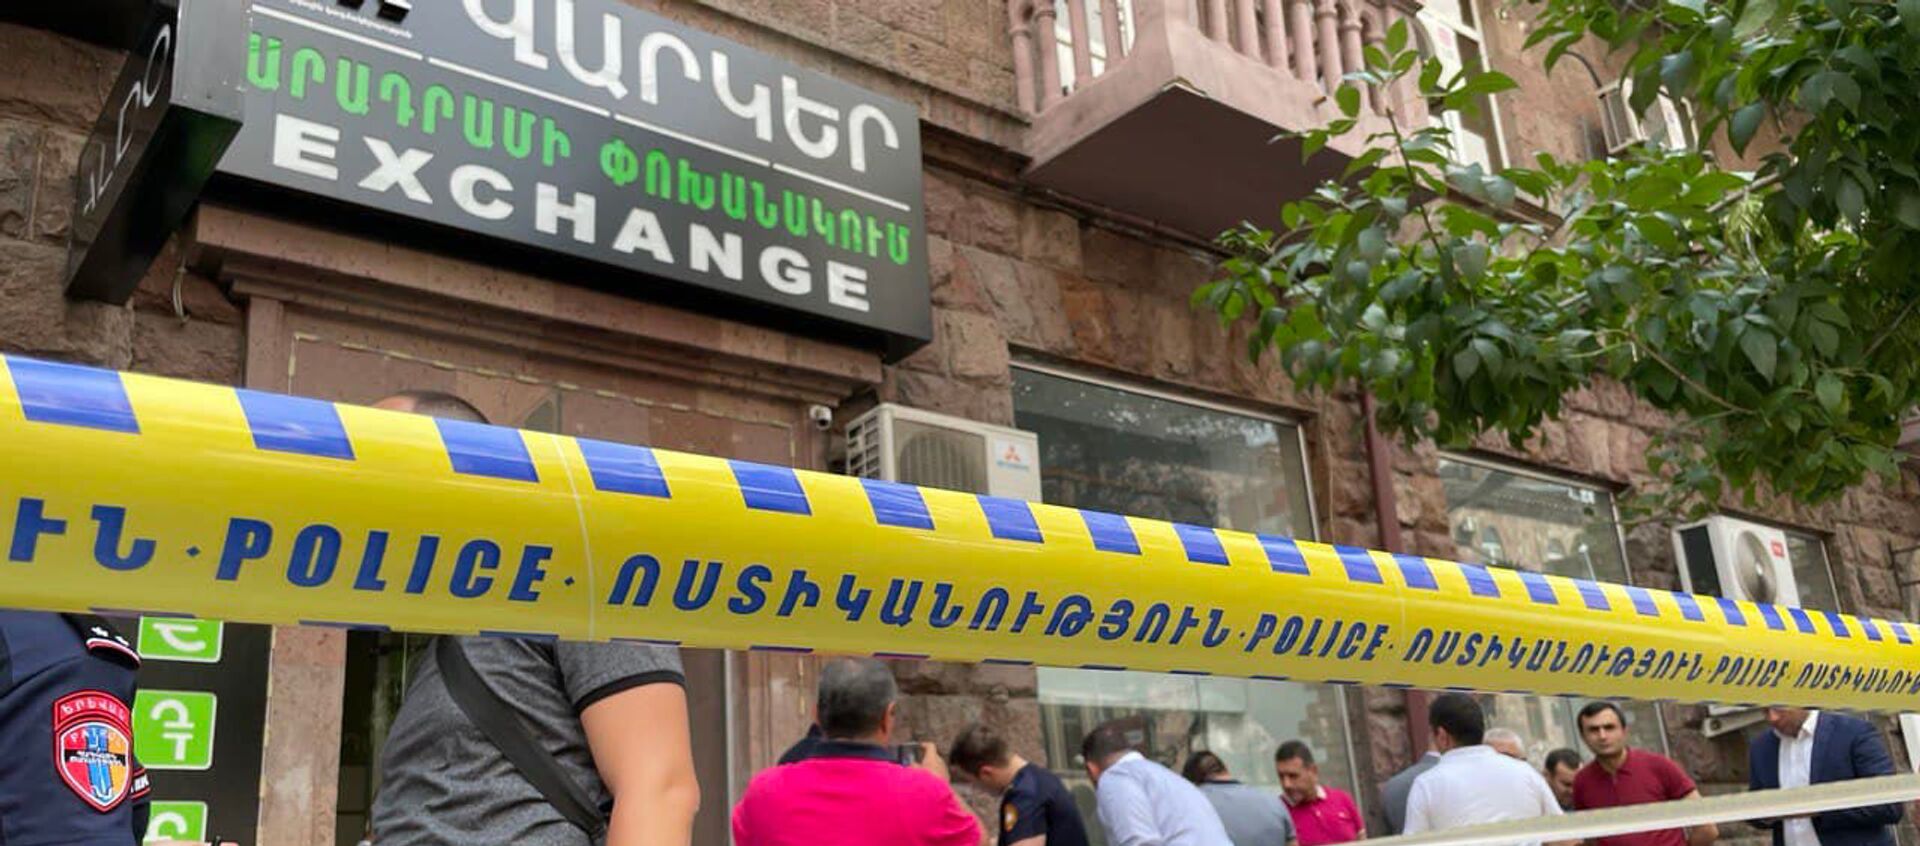 Полиция оцепила место нападения у офиса кредитной организации - Sputnik Արմենիա, 1920, 29.07.2021